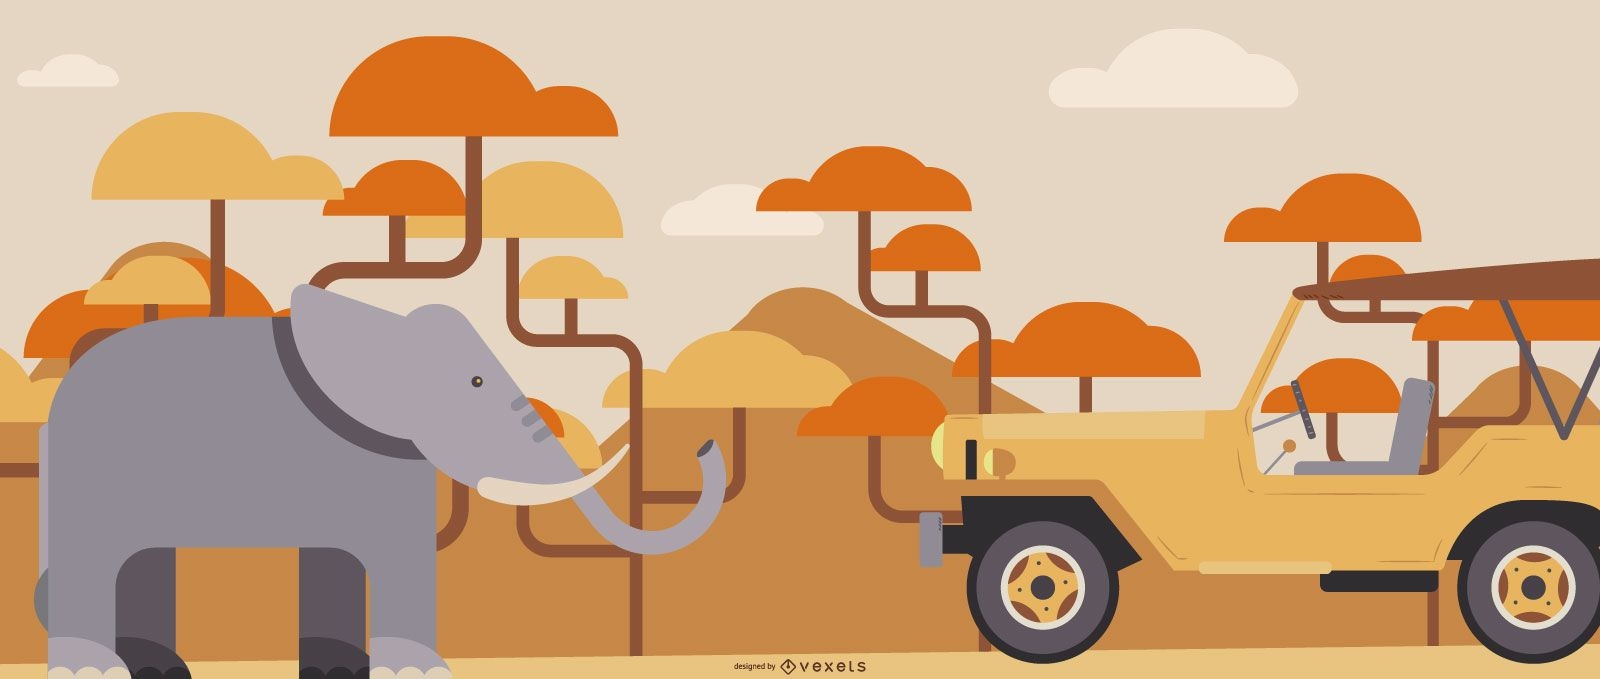 Safari flat illustration